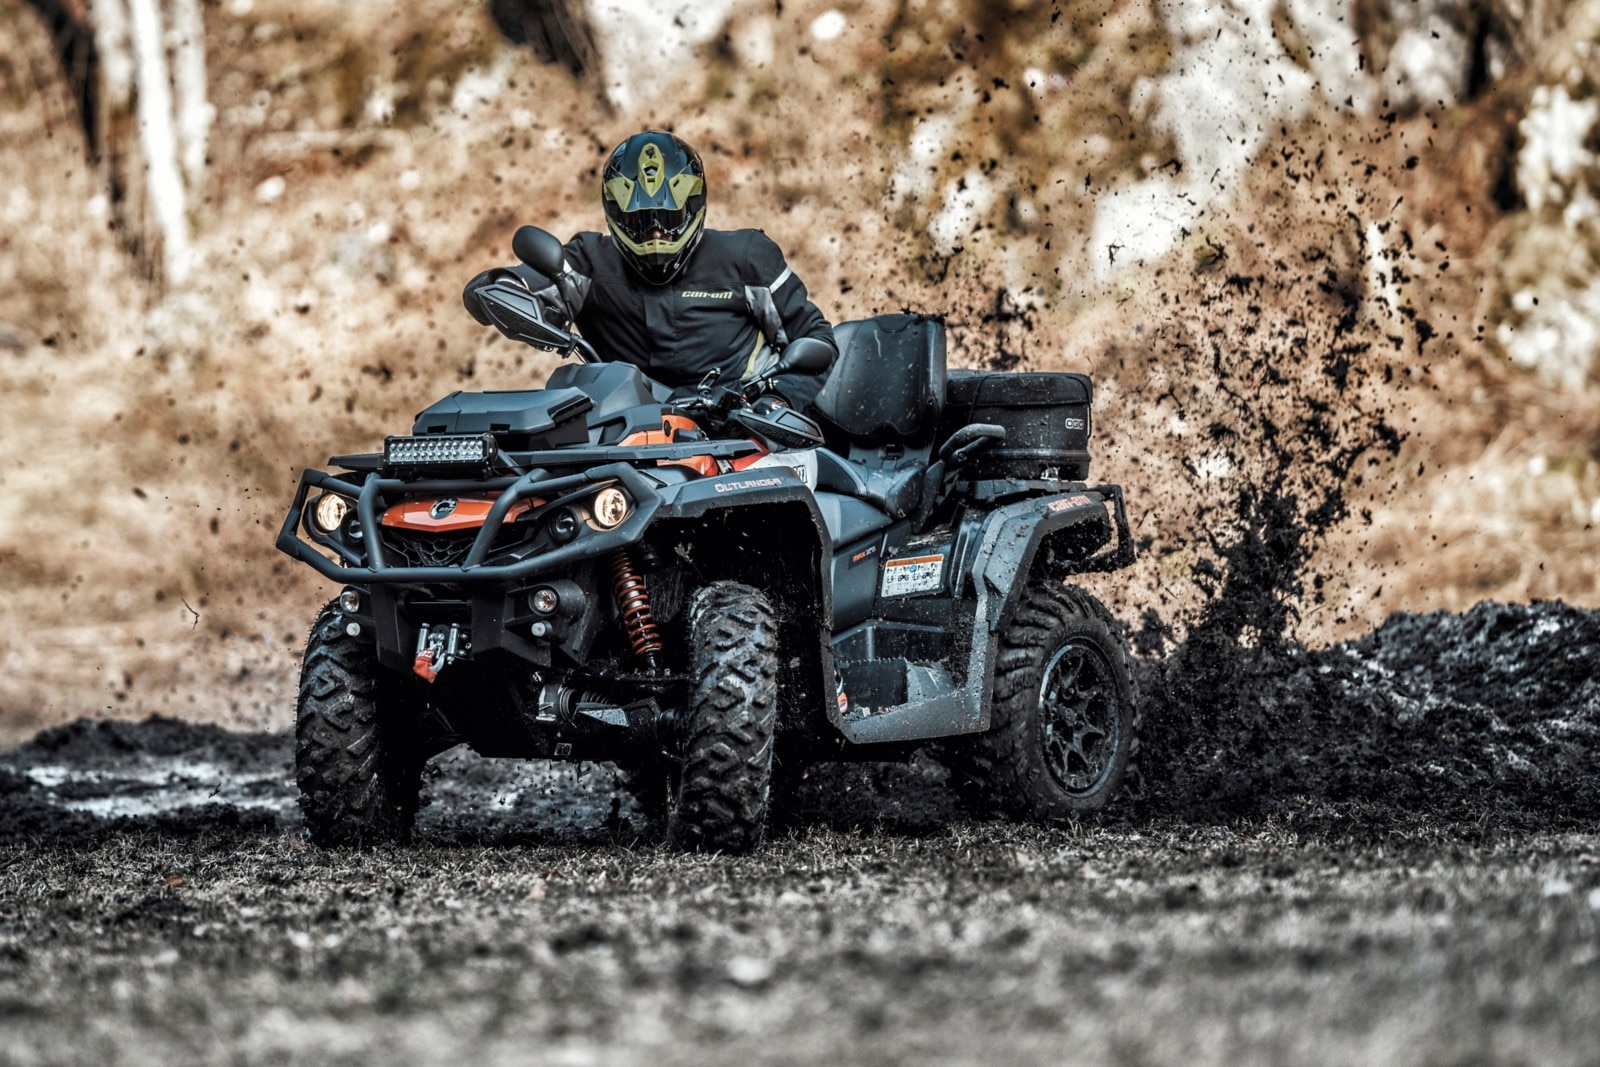 An ATV riding in a muddy trail